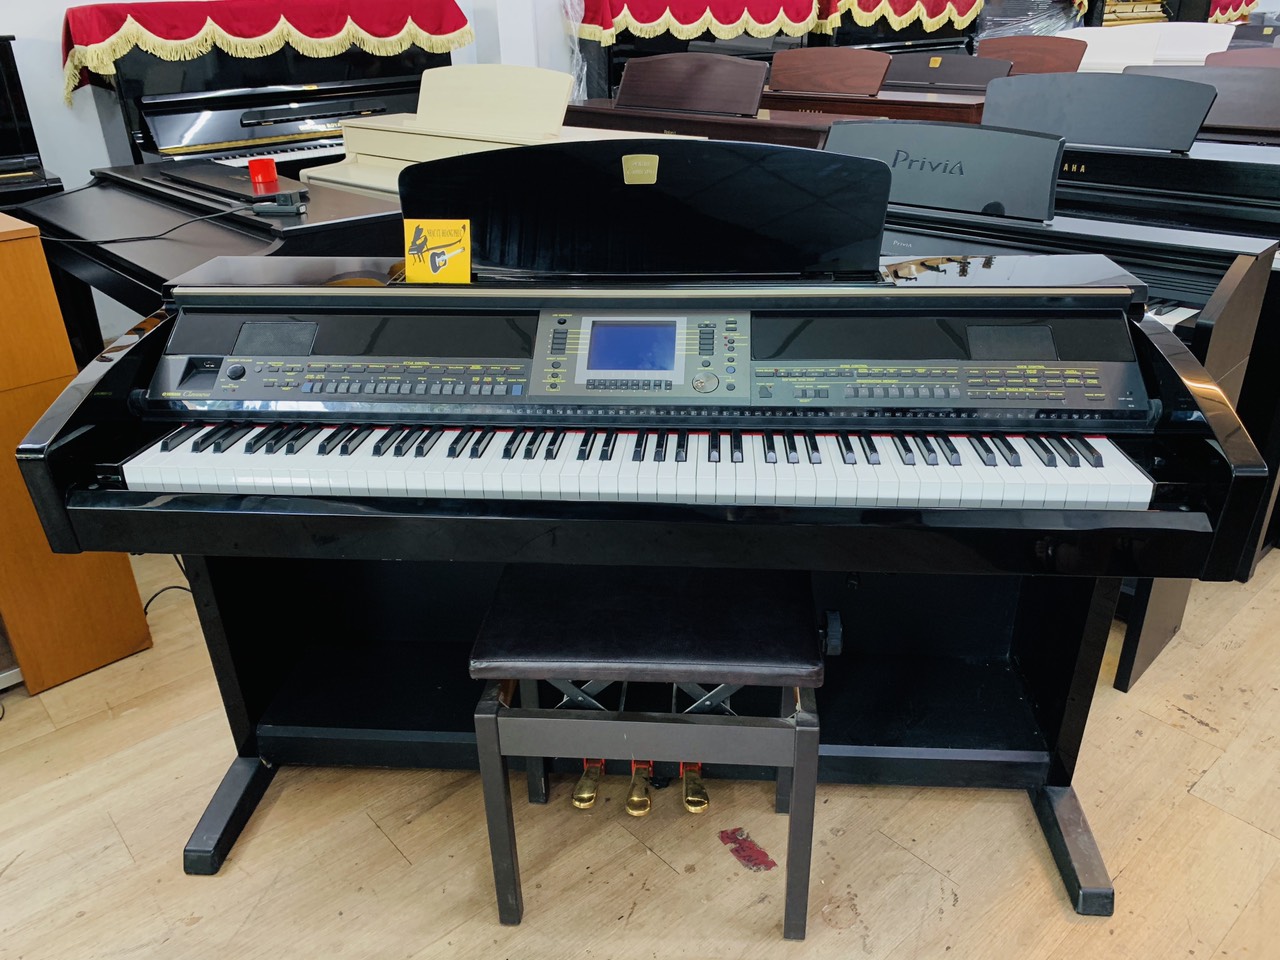 Giá piano điện đắt hay rẻ? Gợi ý mua dành cho người mới học đàn?